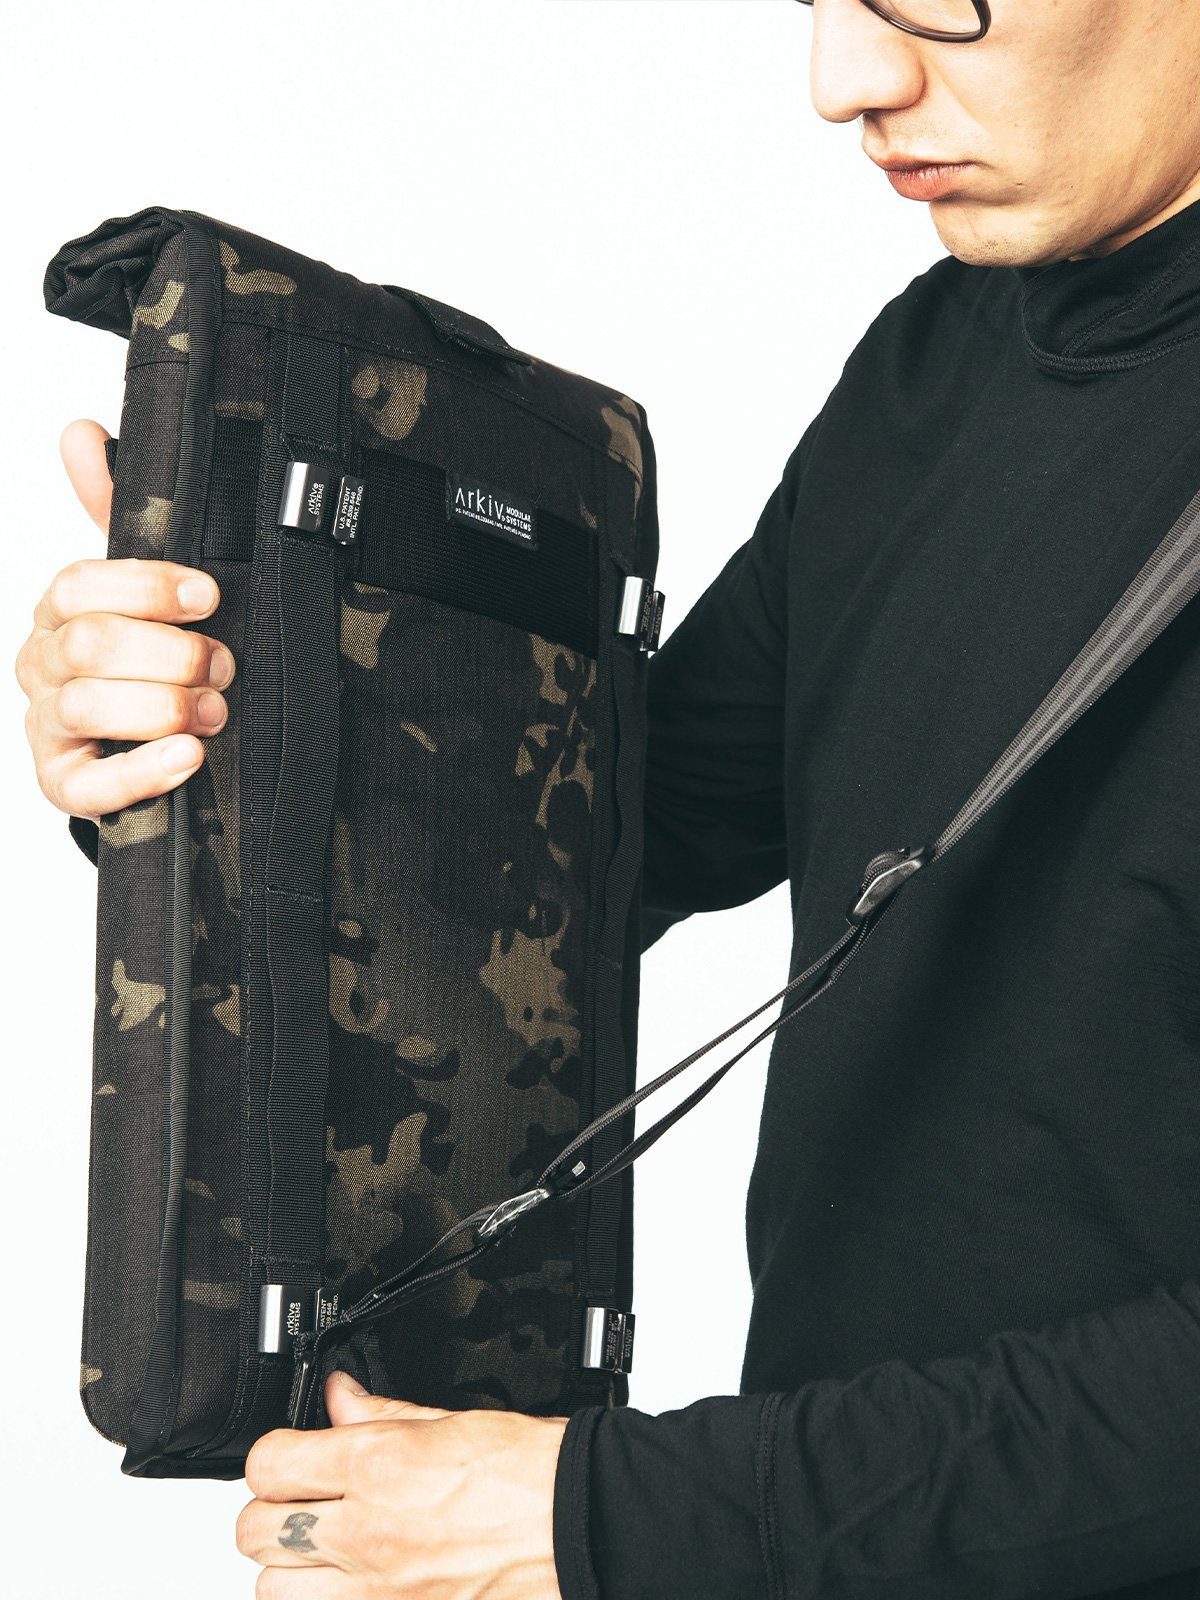 Arkiv Shoulder Strap by Mission Workshop - Wetterfeste Taschen und technische Bekleidung - San Francisco & Los Angeles - Für die Ewigkeit gebaut - Garantiert